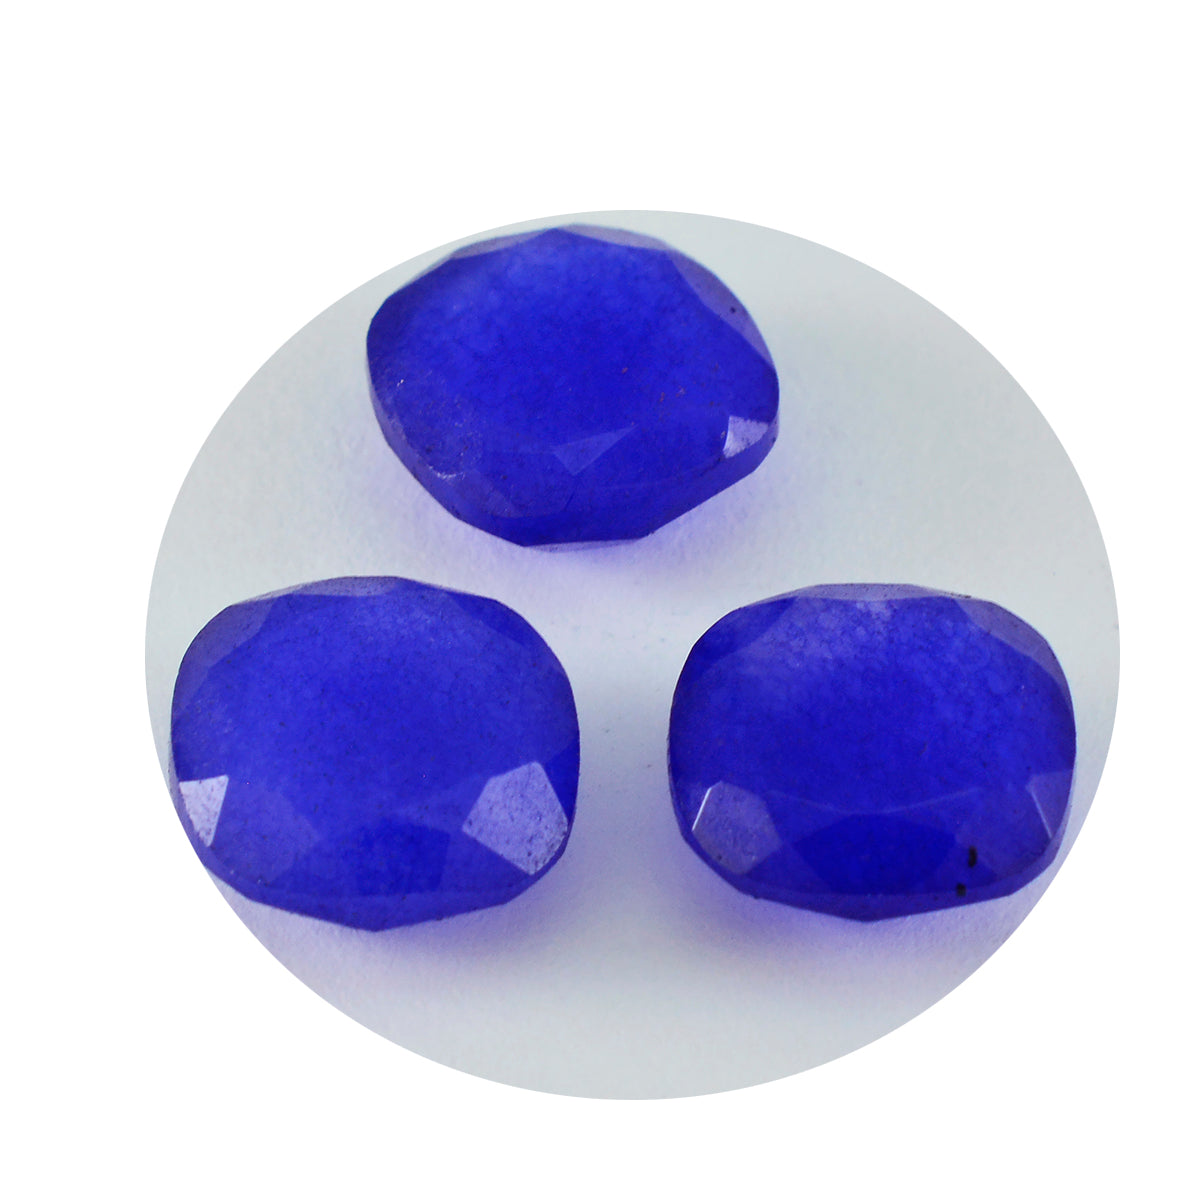 riyogems 1pc リアル ブルー ジャスパー ファセット 11x11 mm クッション形状 a1 品質の宝石